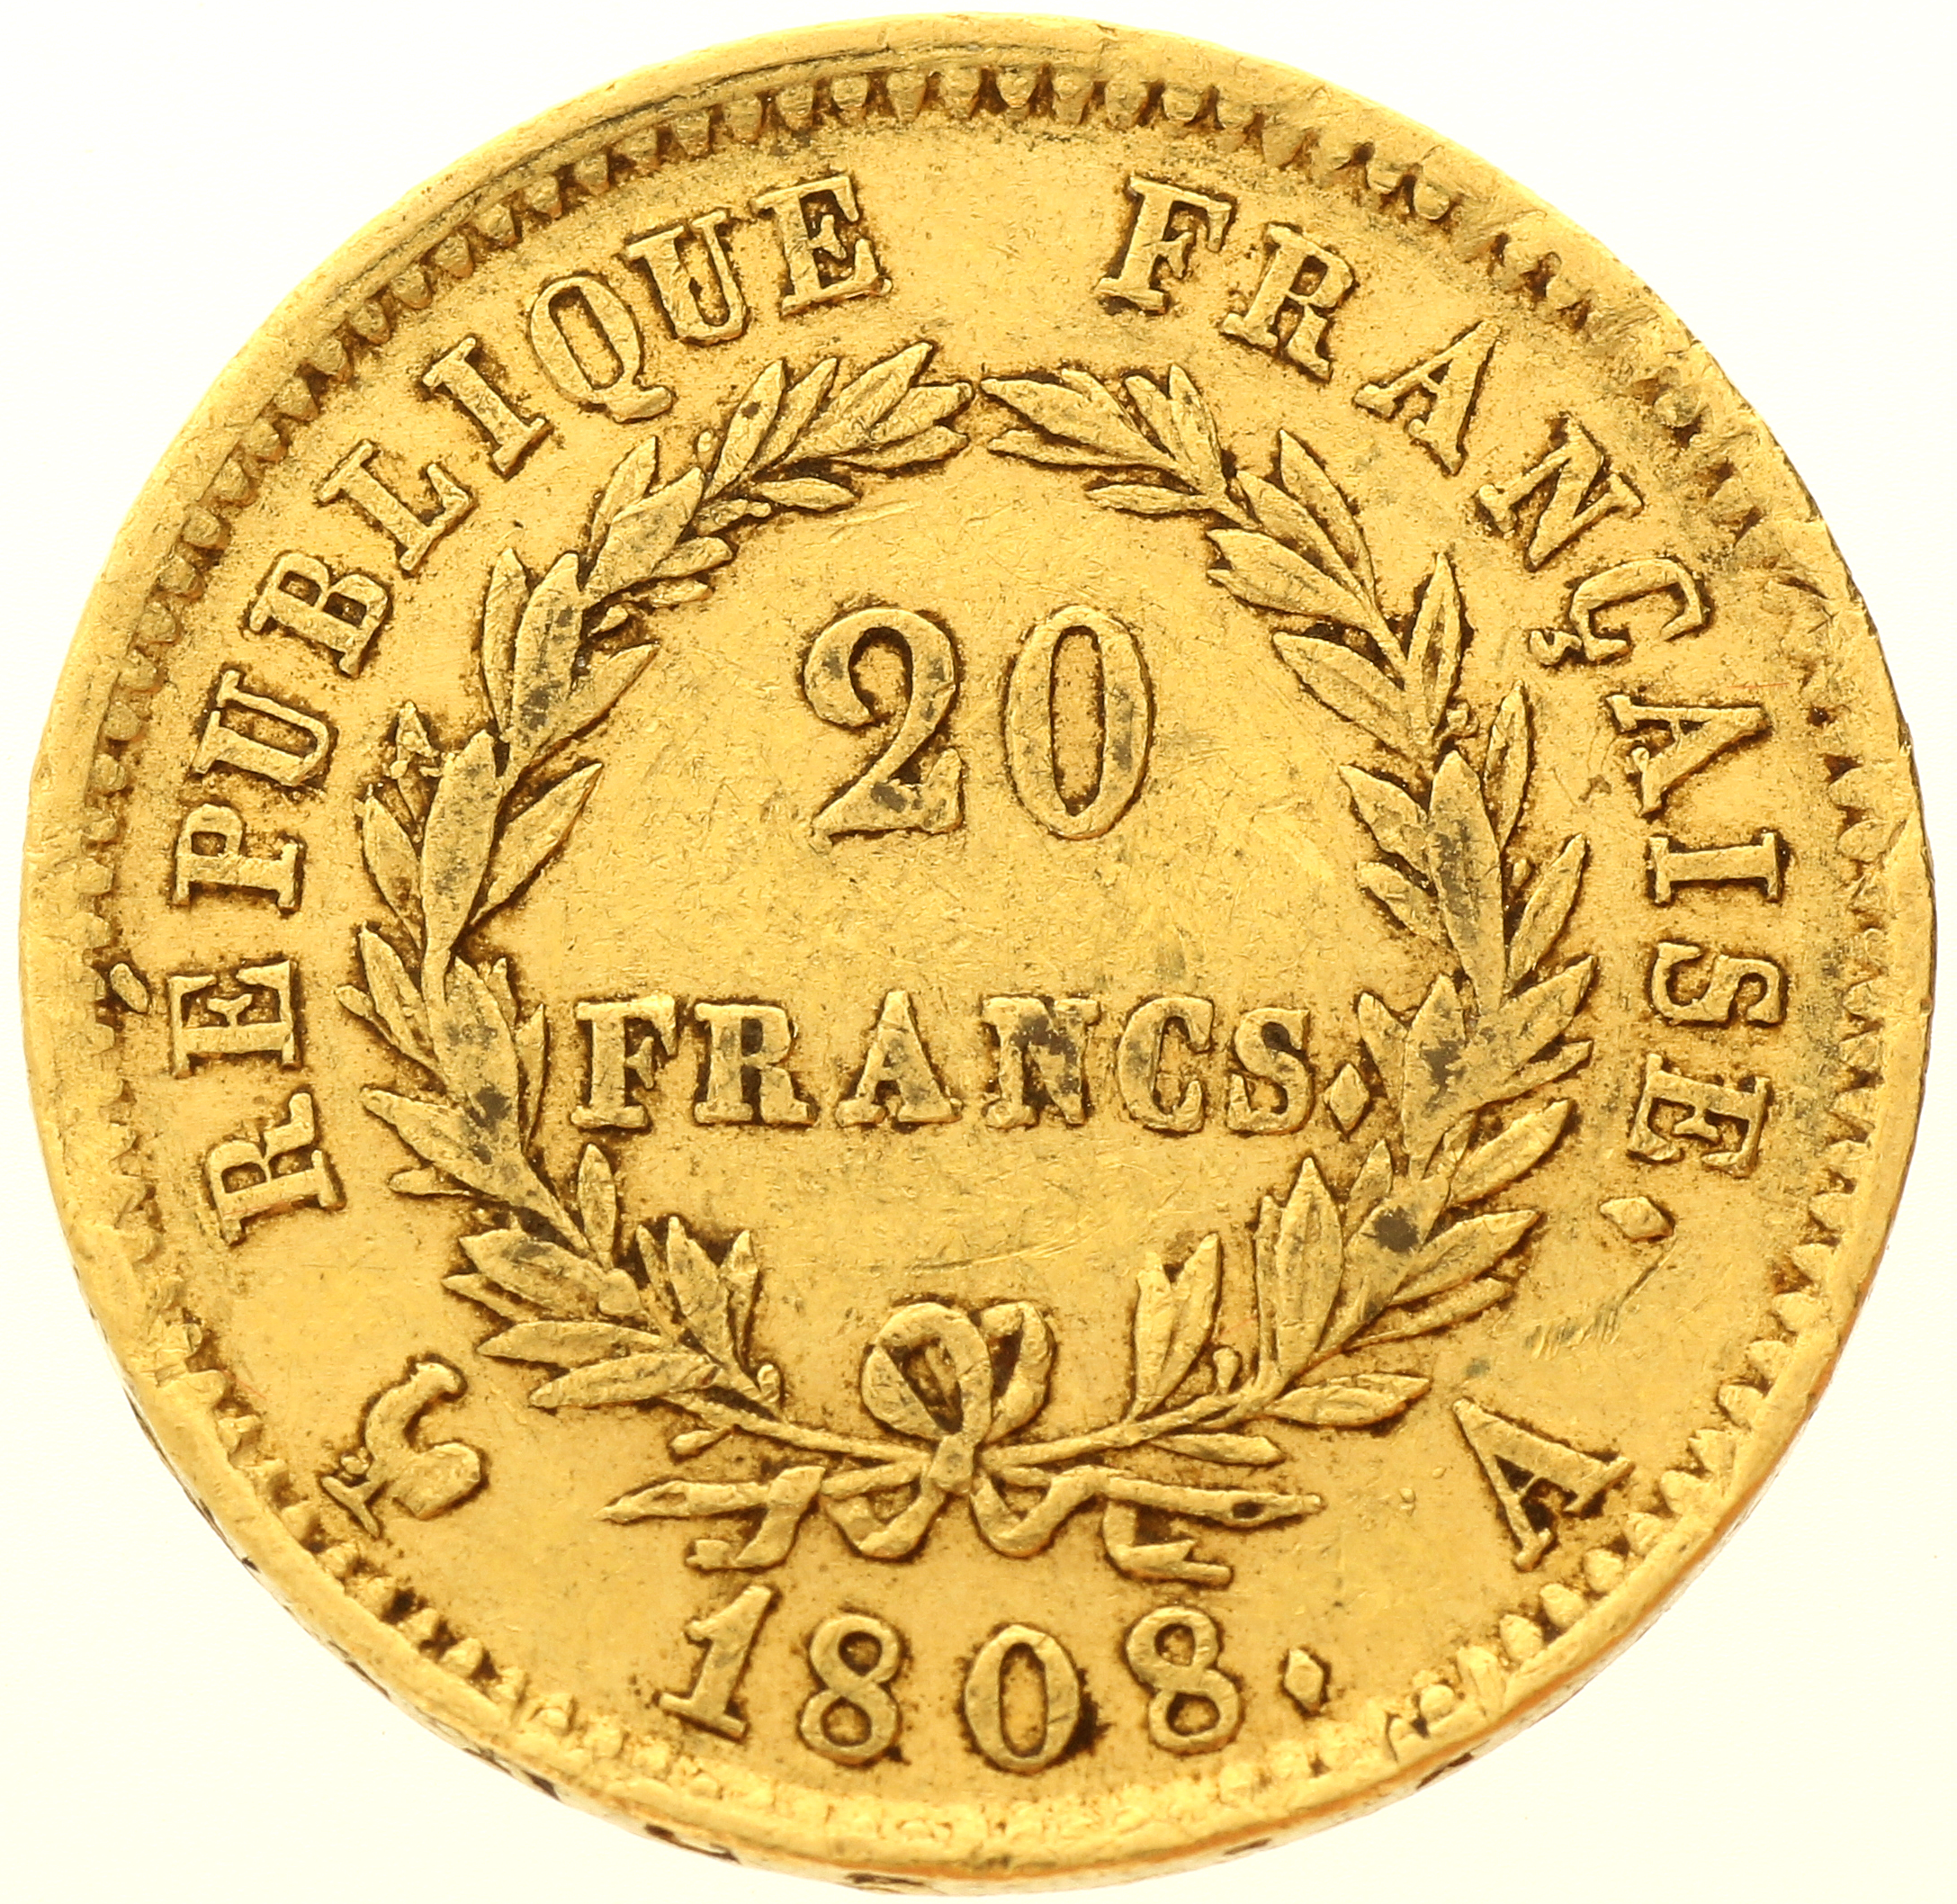 France - 20 francs - 1808 - A - Napoleon I